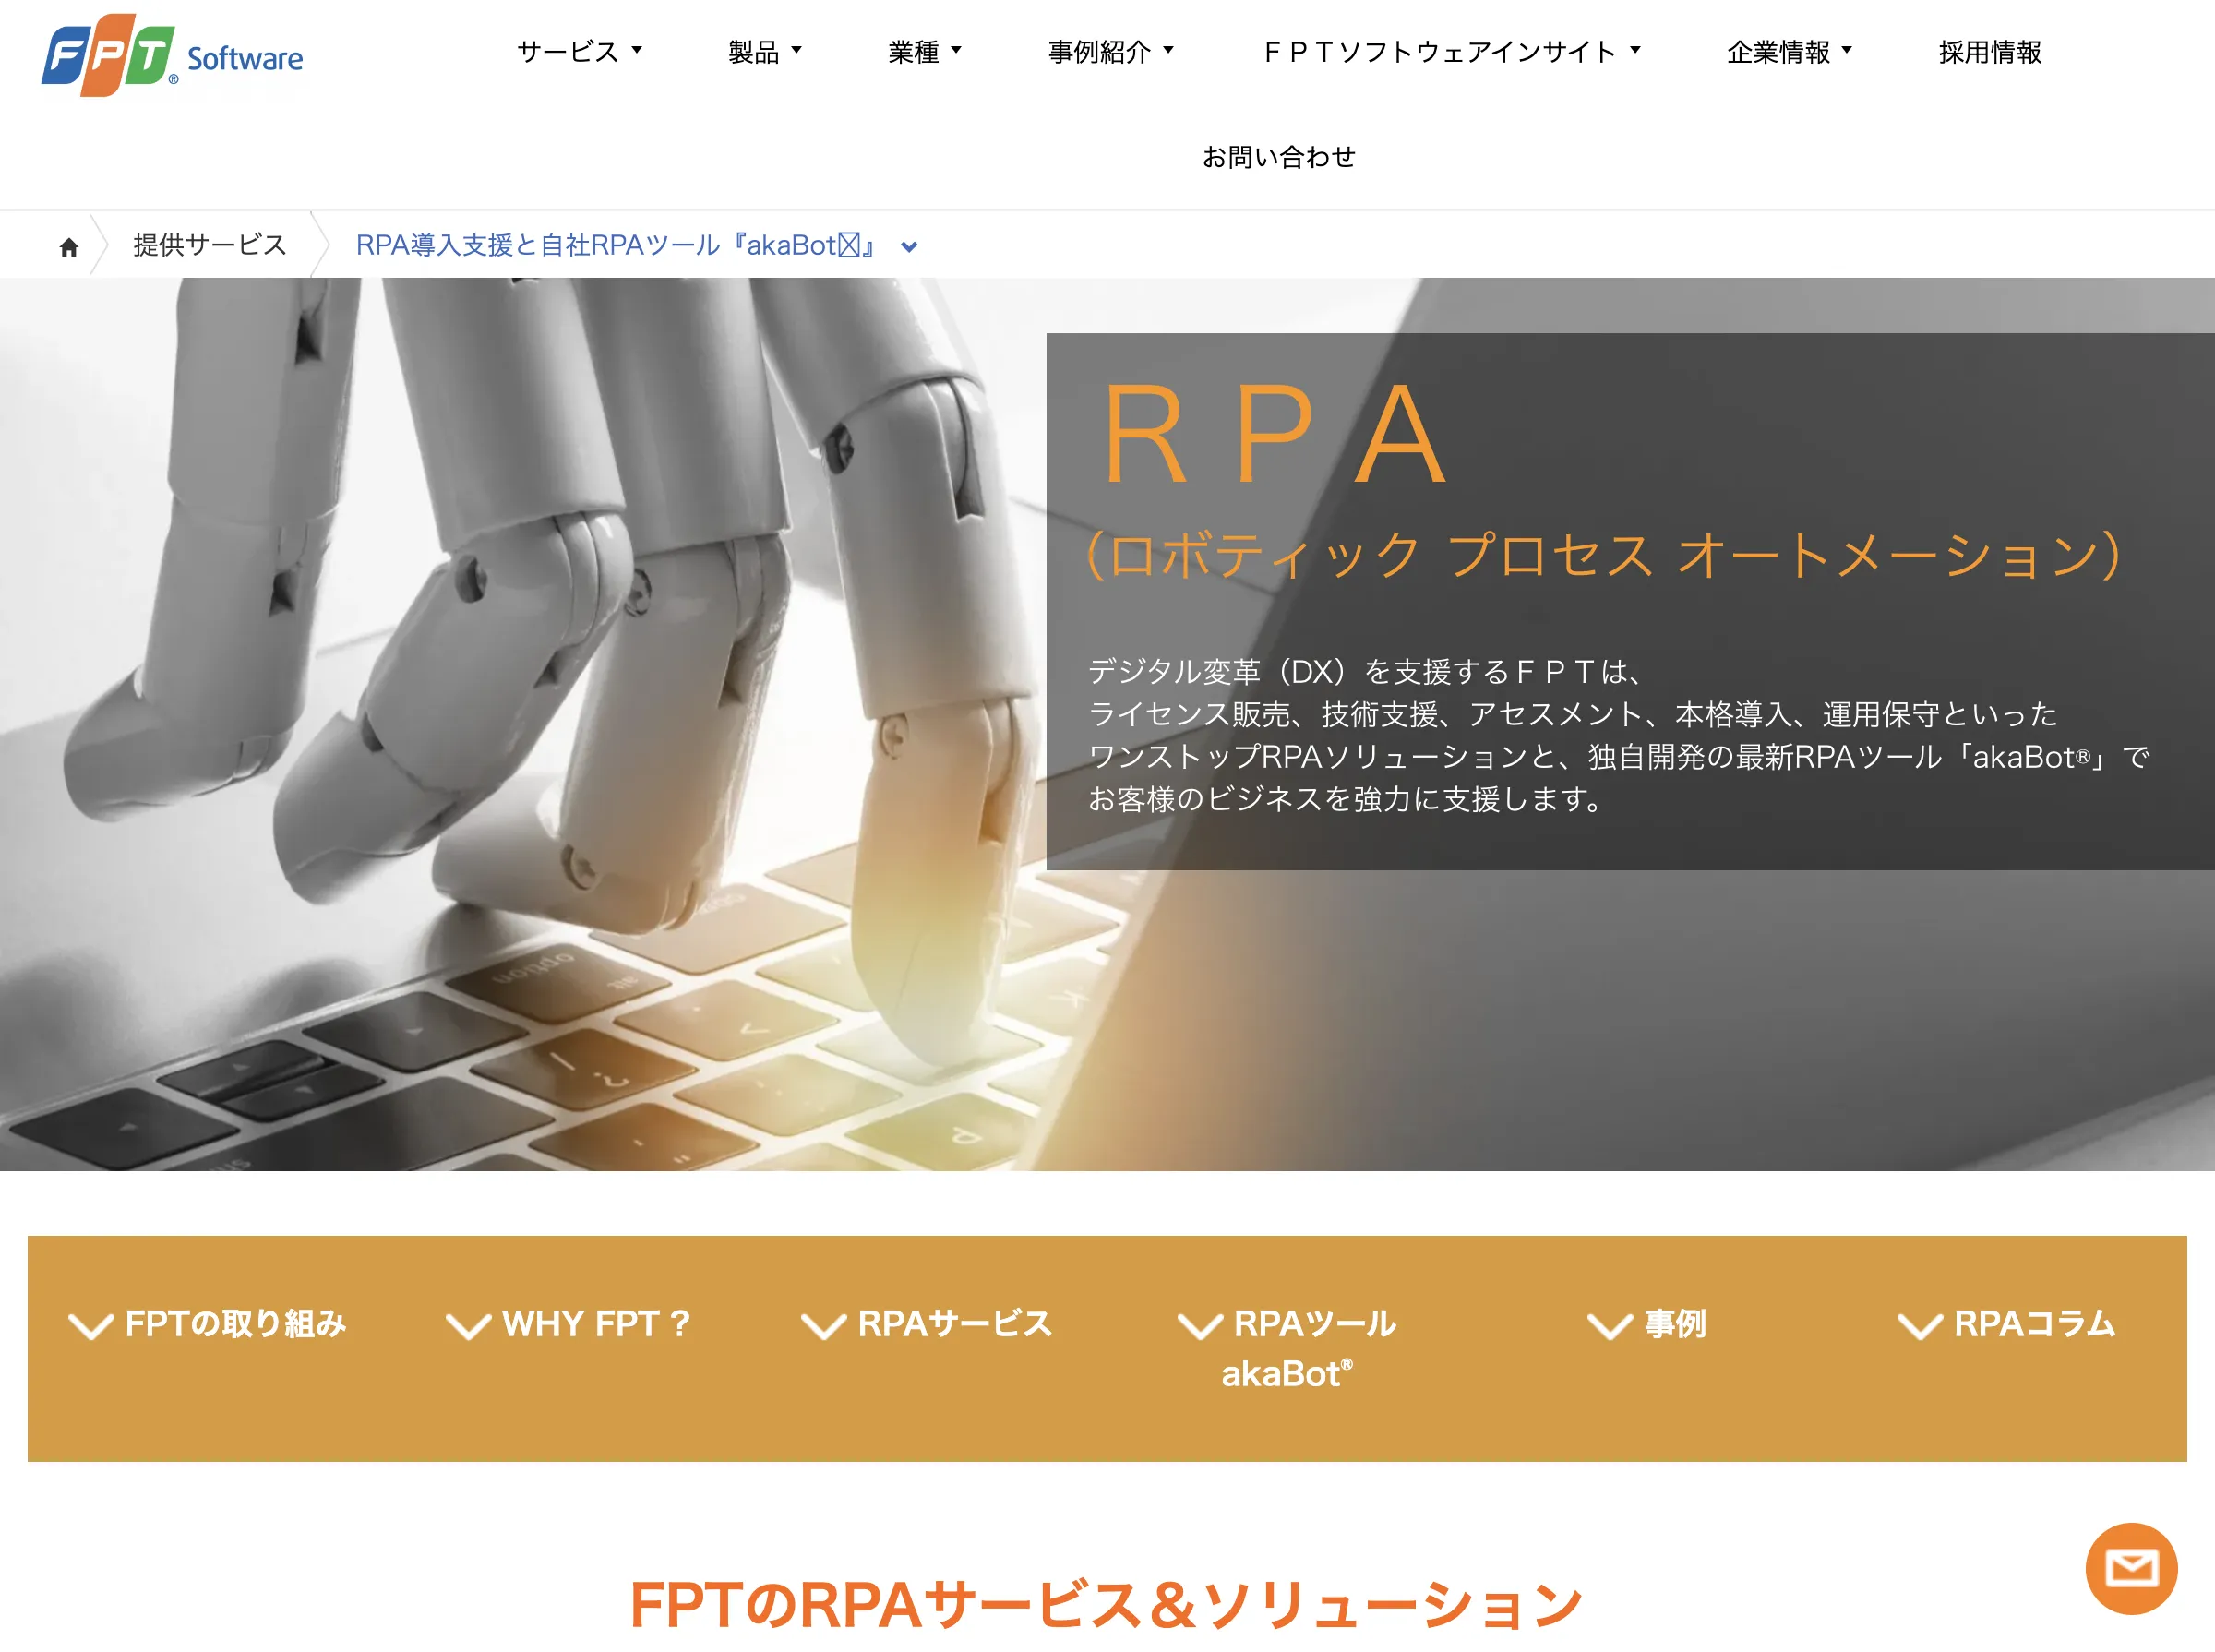 FPT RPAソリューション(FPTジャパンホールディングス株式会社)